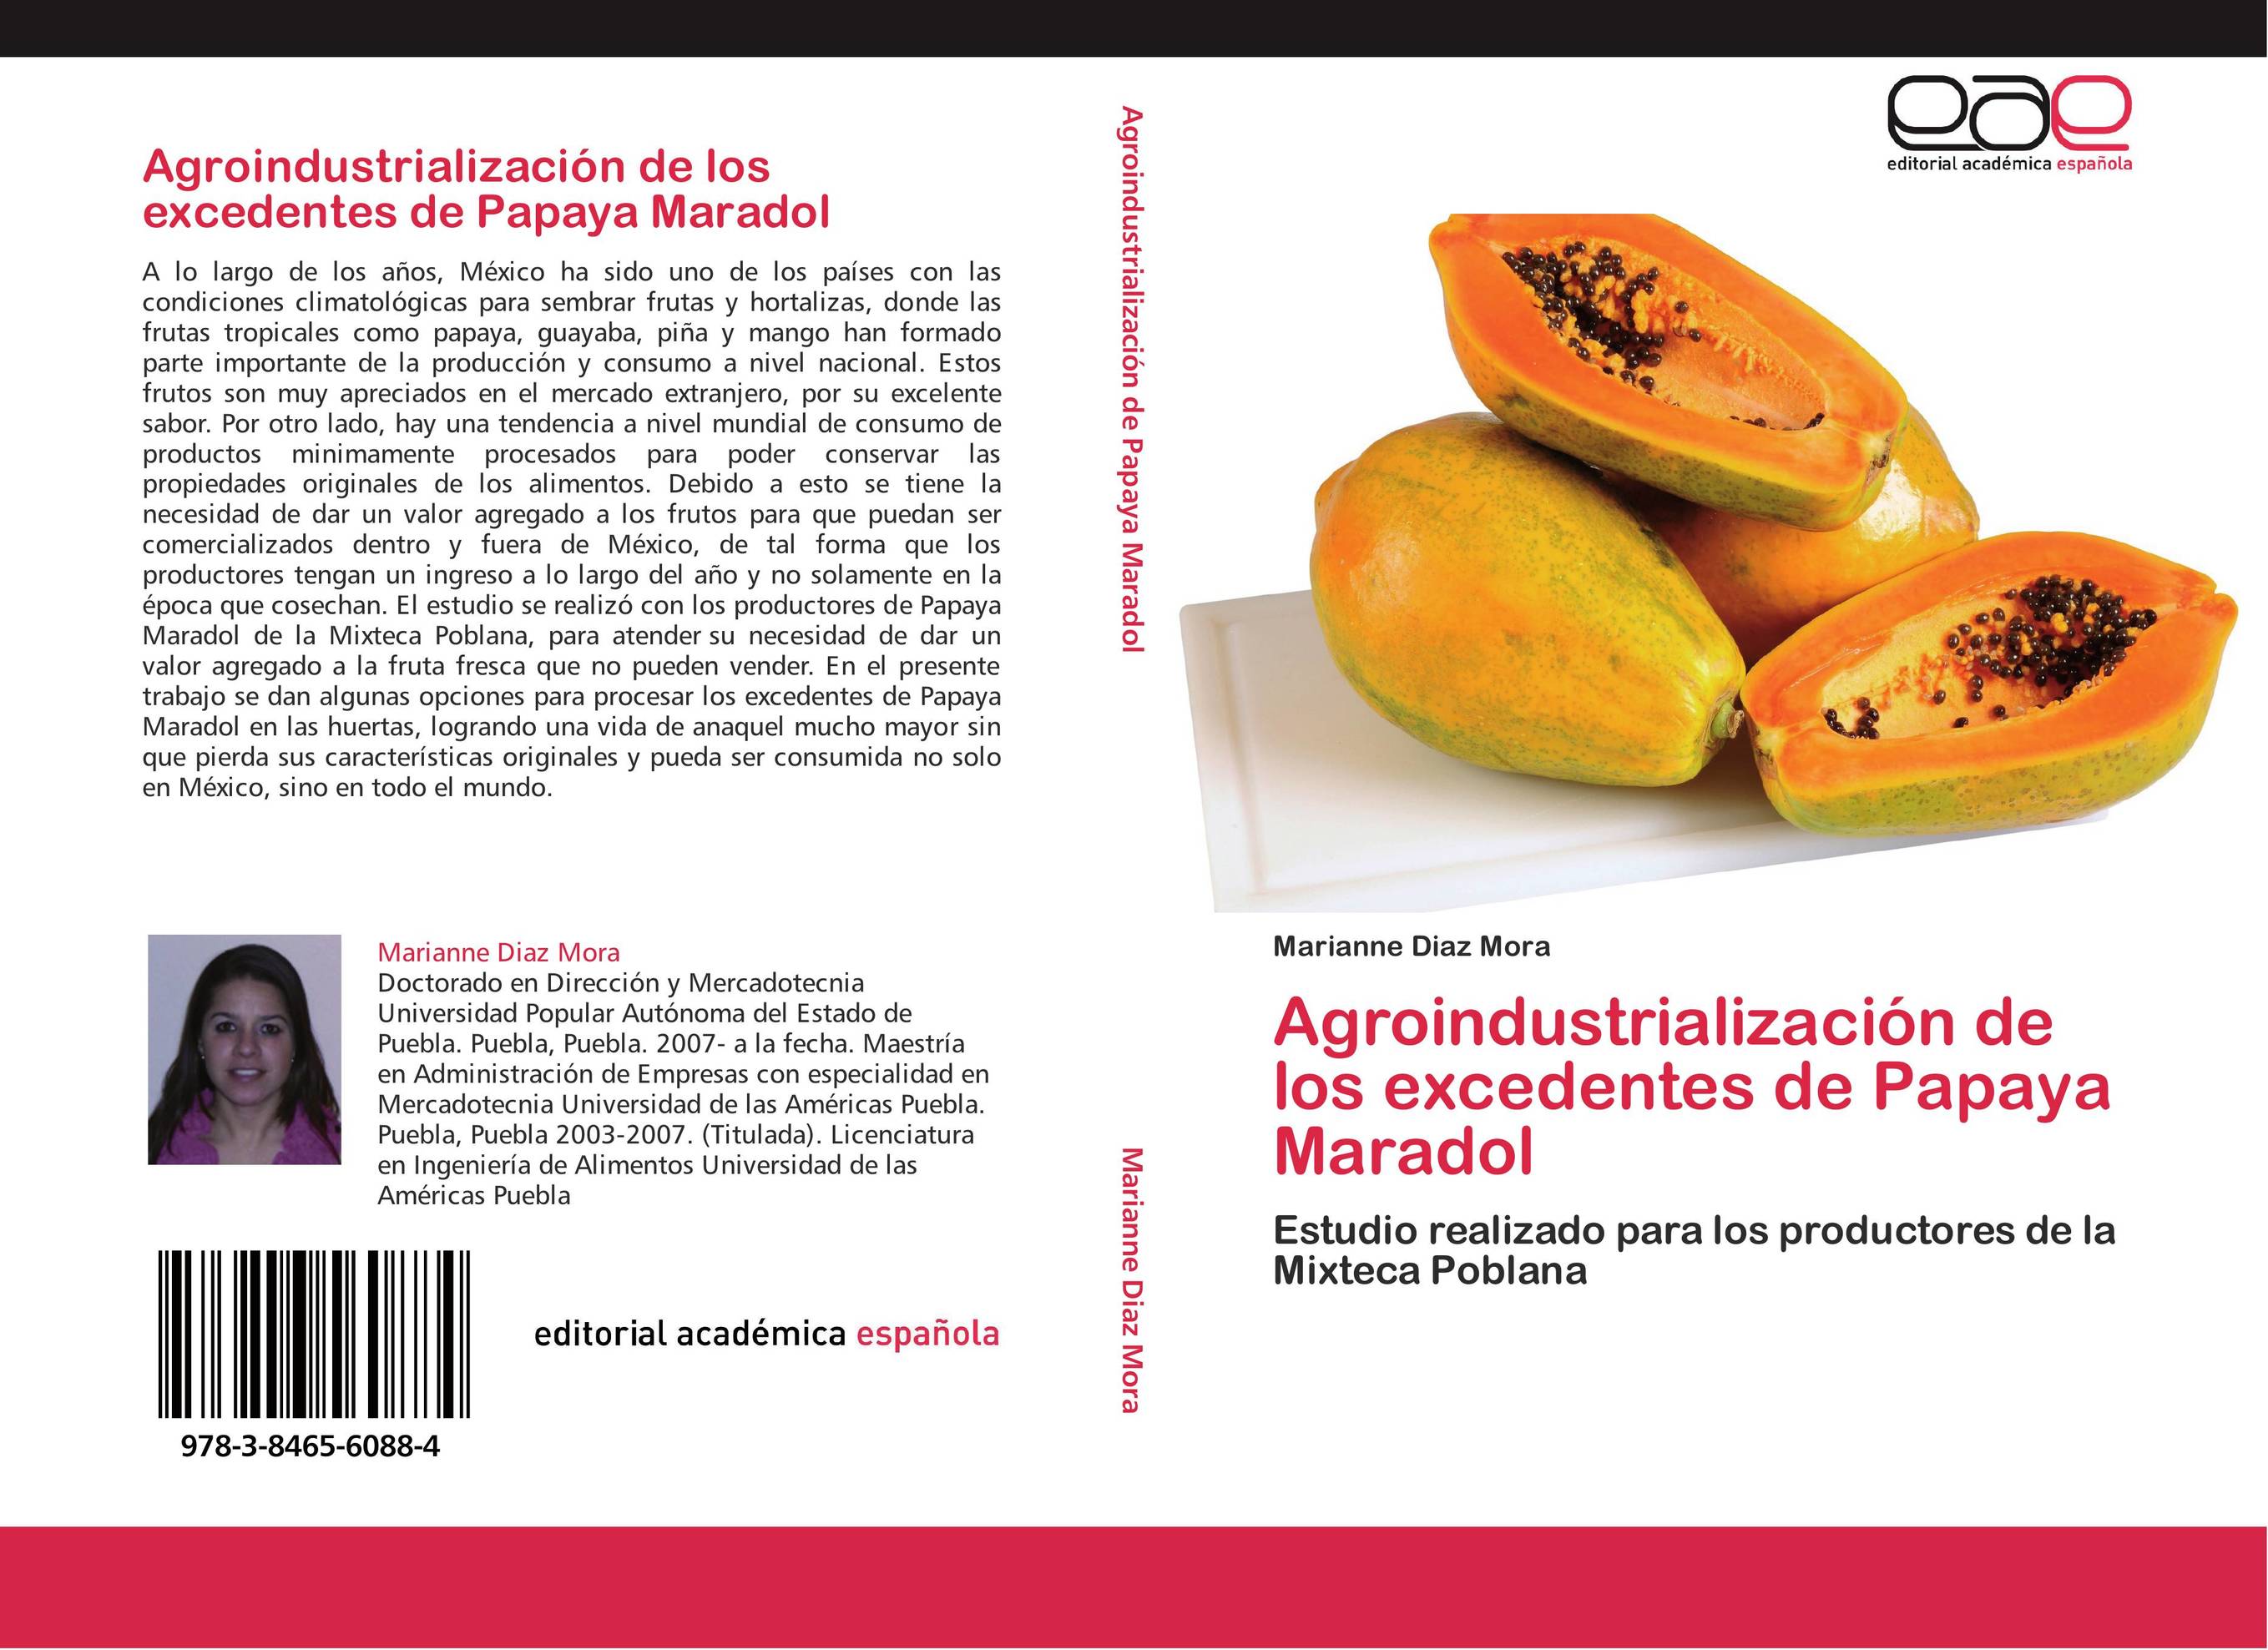 Agroindustrialización de los excedentes de Papaya Maradol